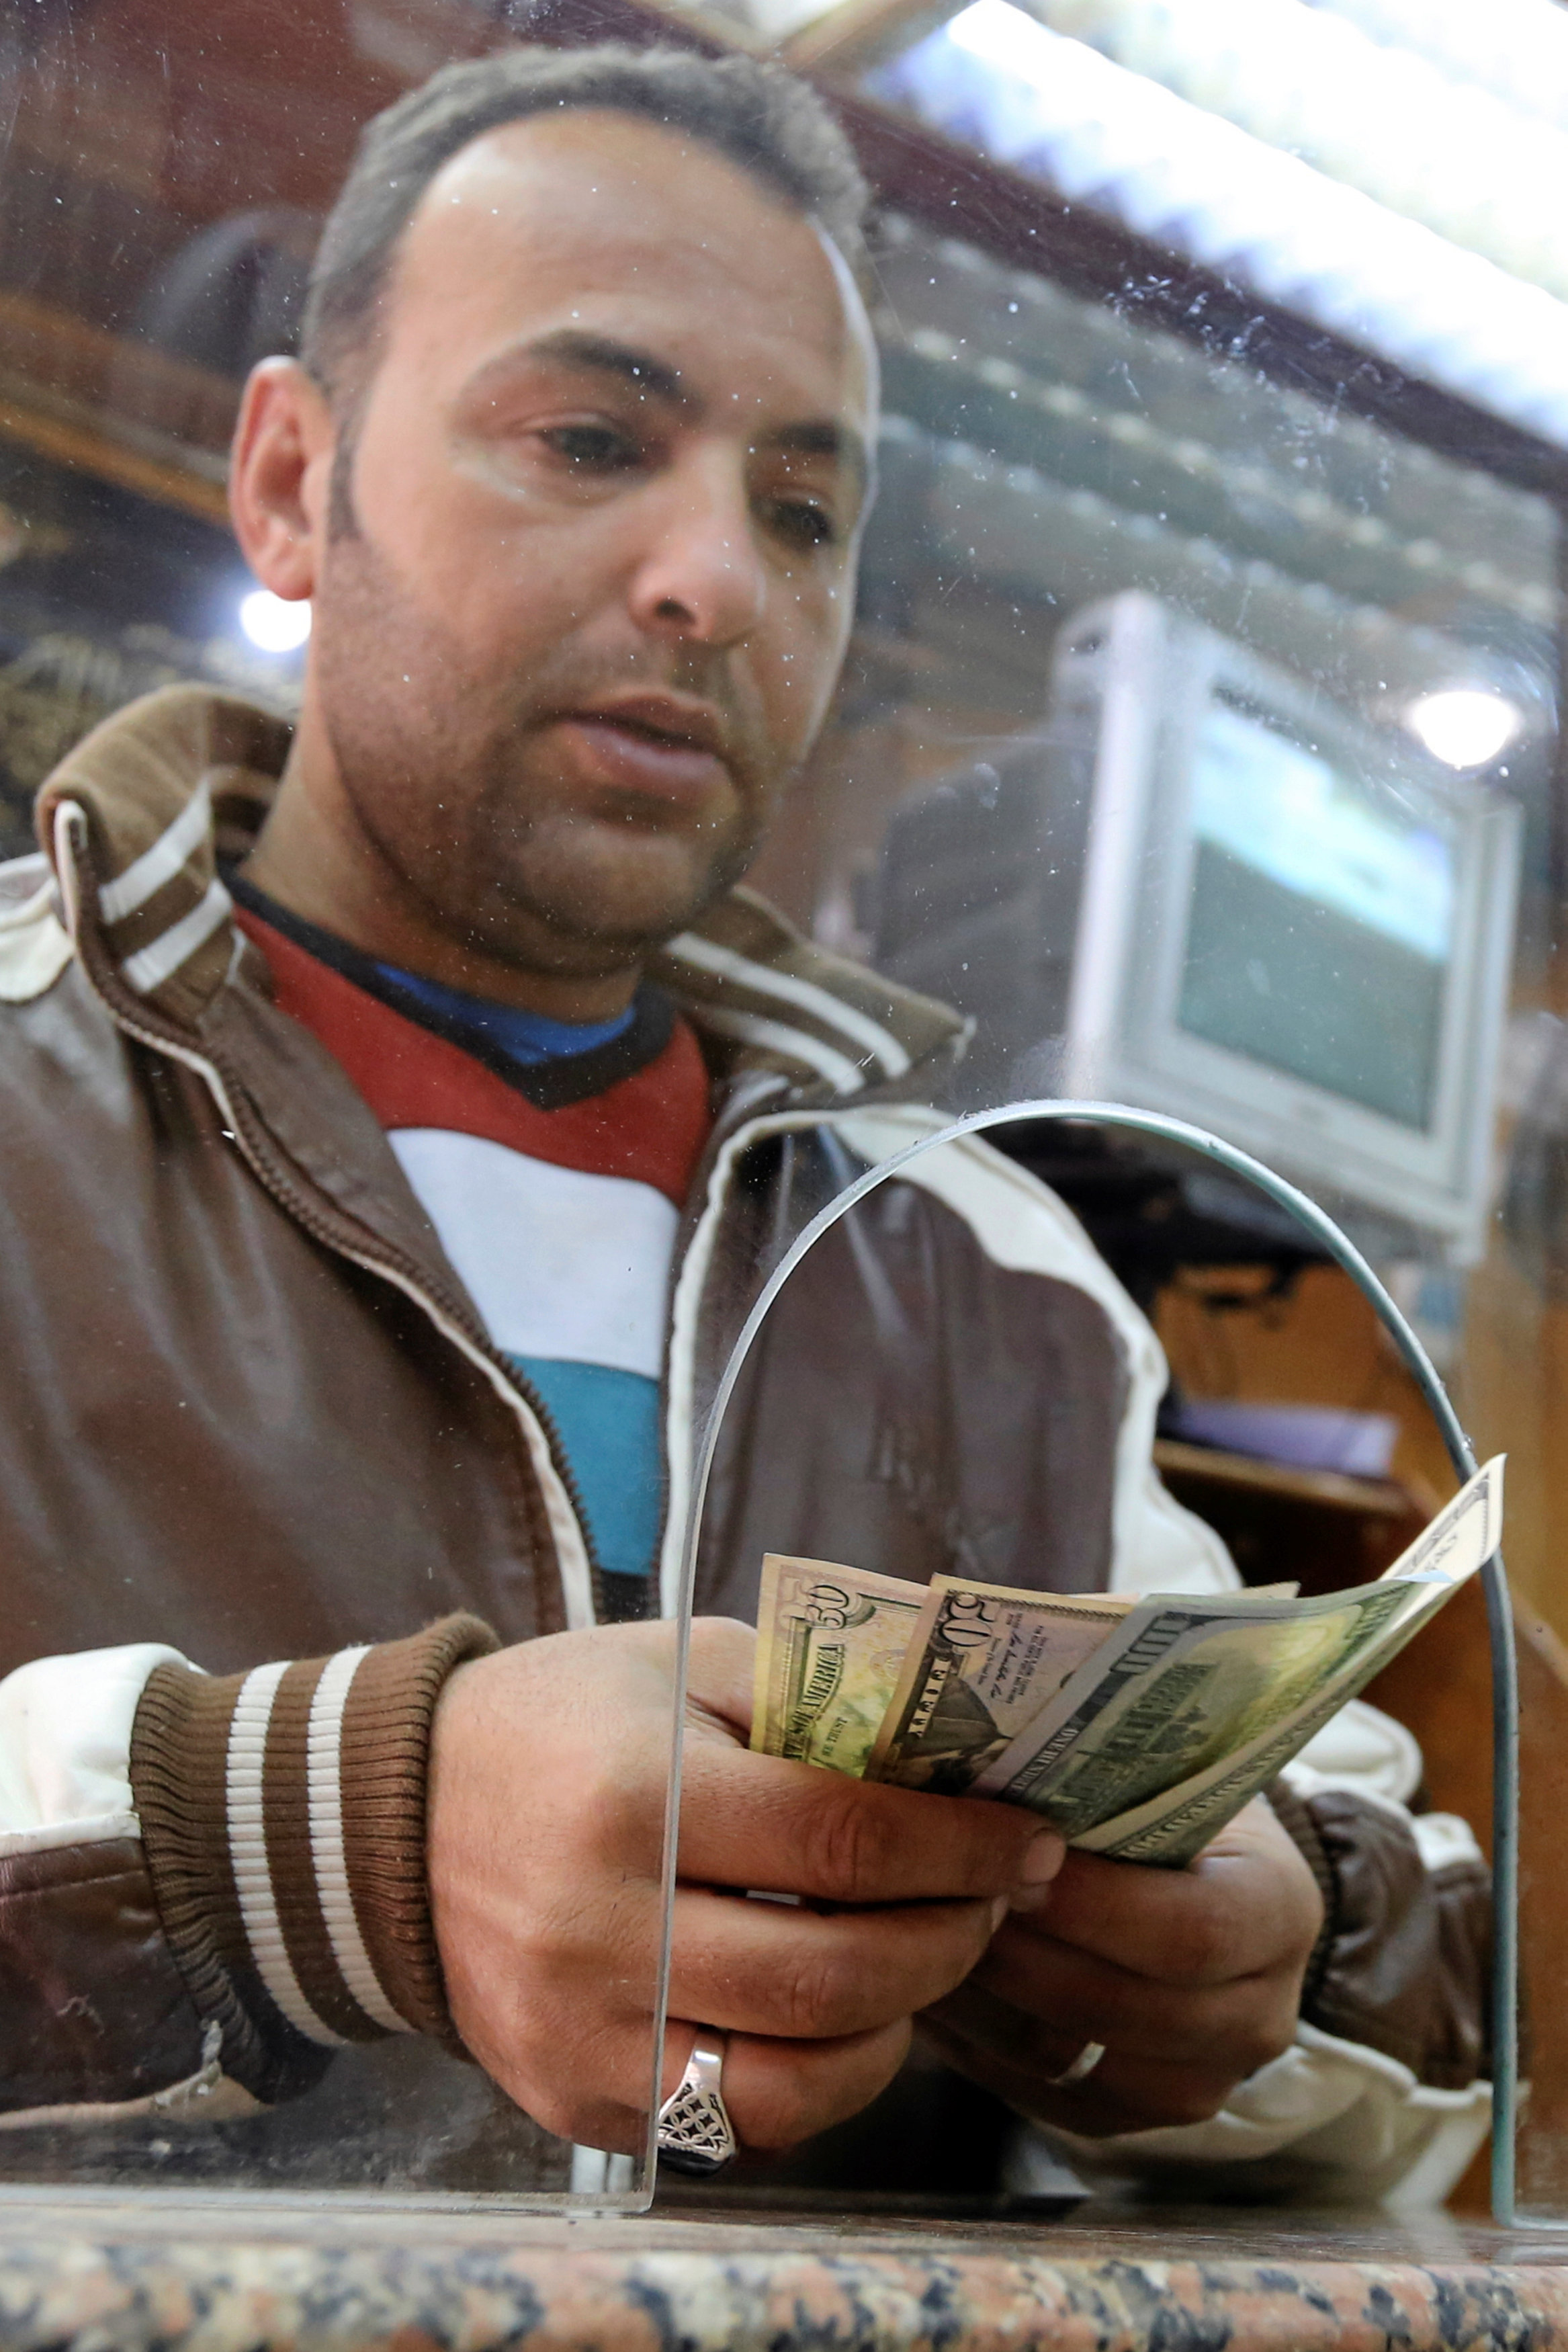 Mısır'da ekonomik krizin önü alınamıyor